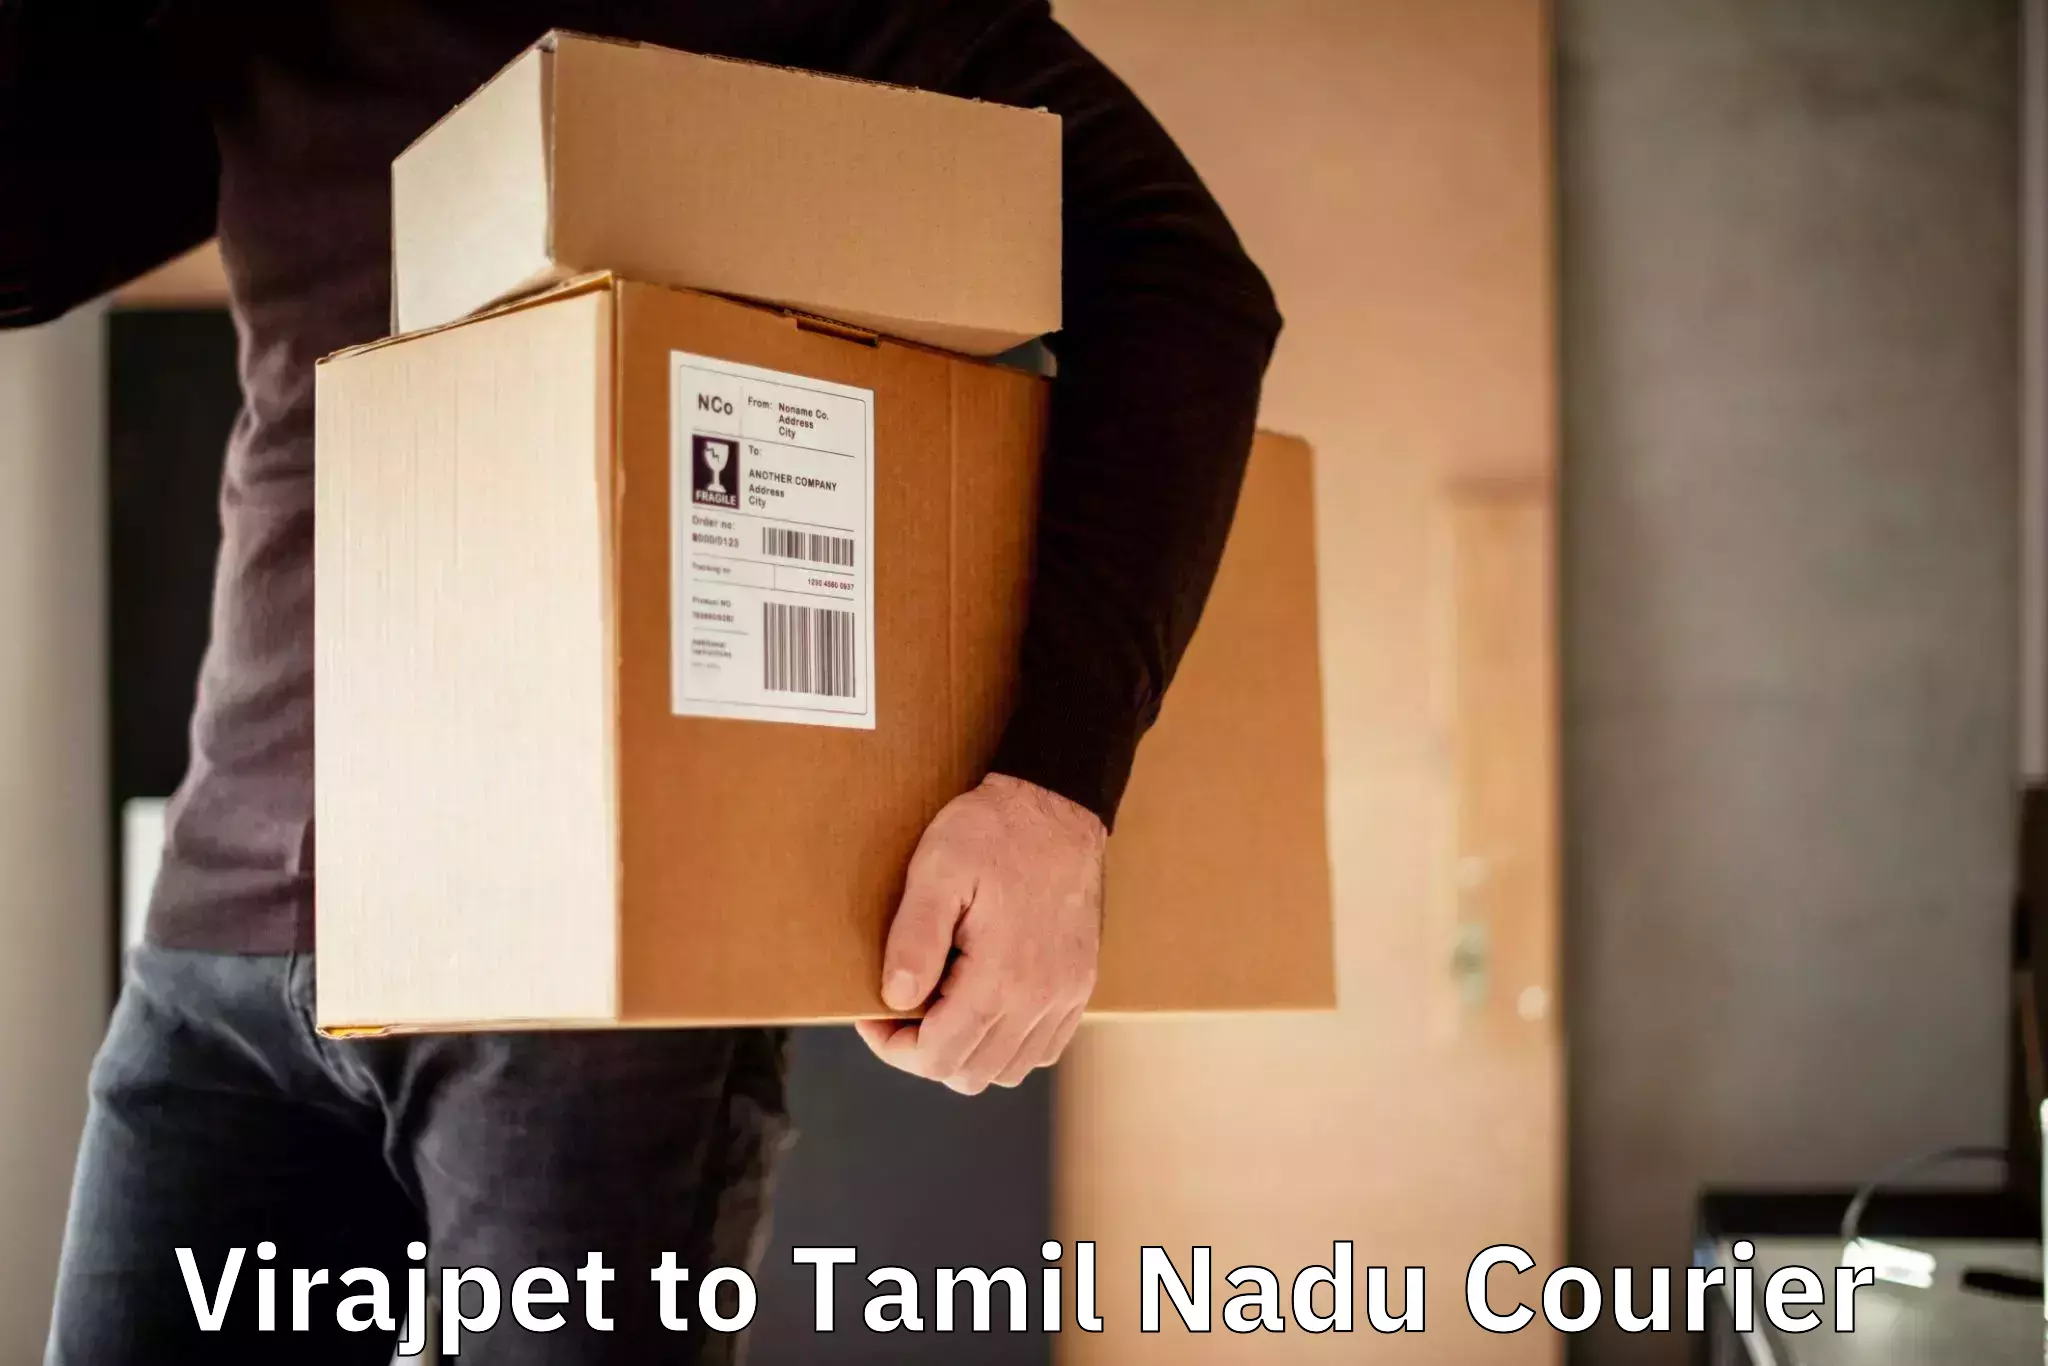 24/7 courier service Virajpet to Tiruturaipundi